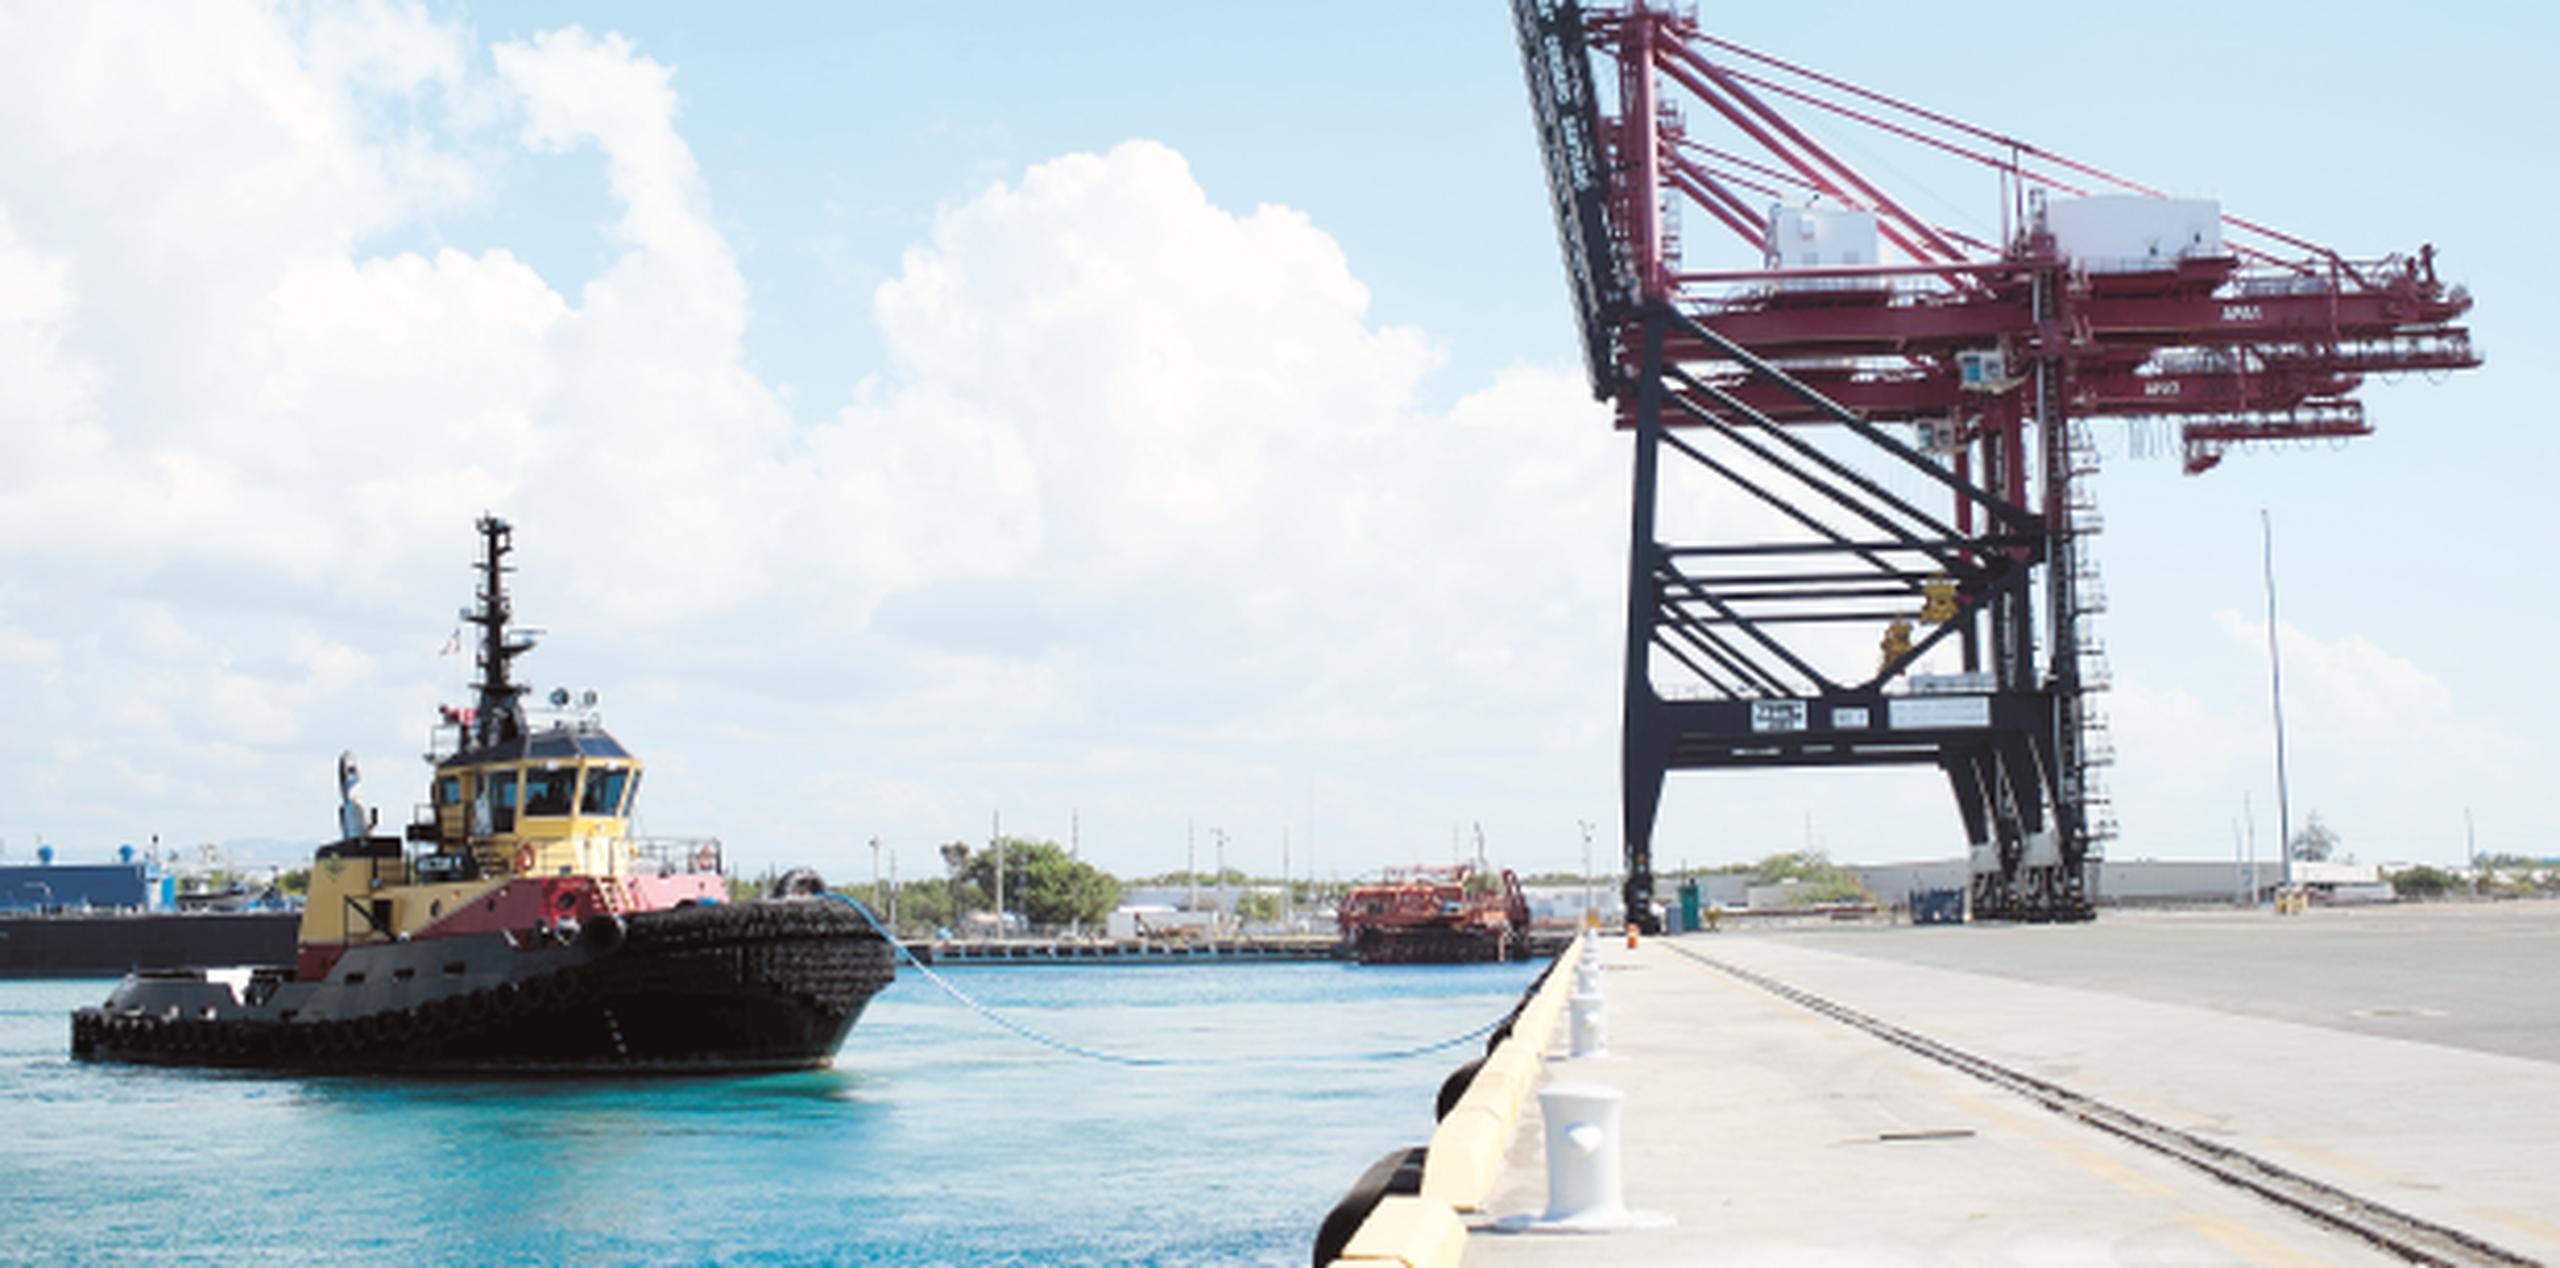 El paso de buques en el Caribe por la esclusa de la ampliación del Canal, Agua Clara, permanece abierto, indicó la autoridad. (Archivo)